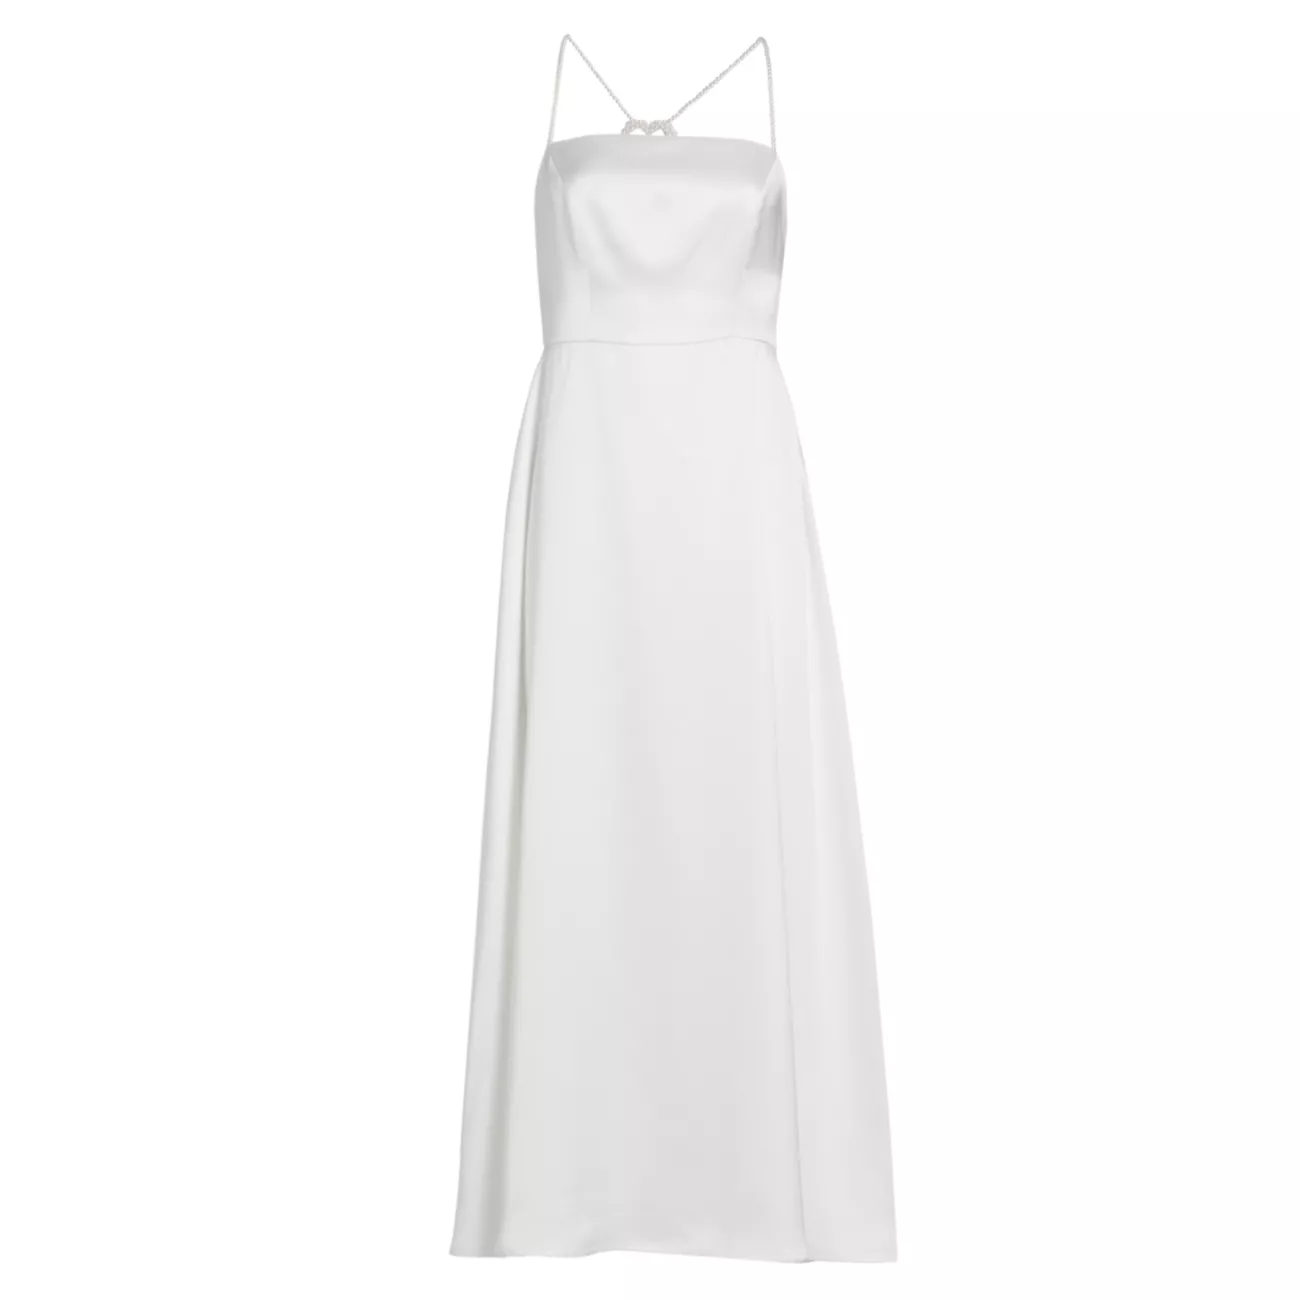 Emma Faux-Pearl Embellished Dress HVN